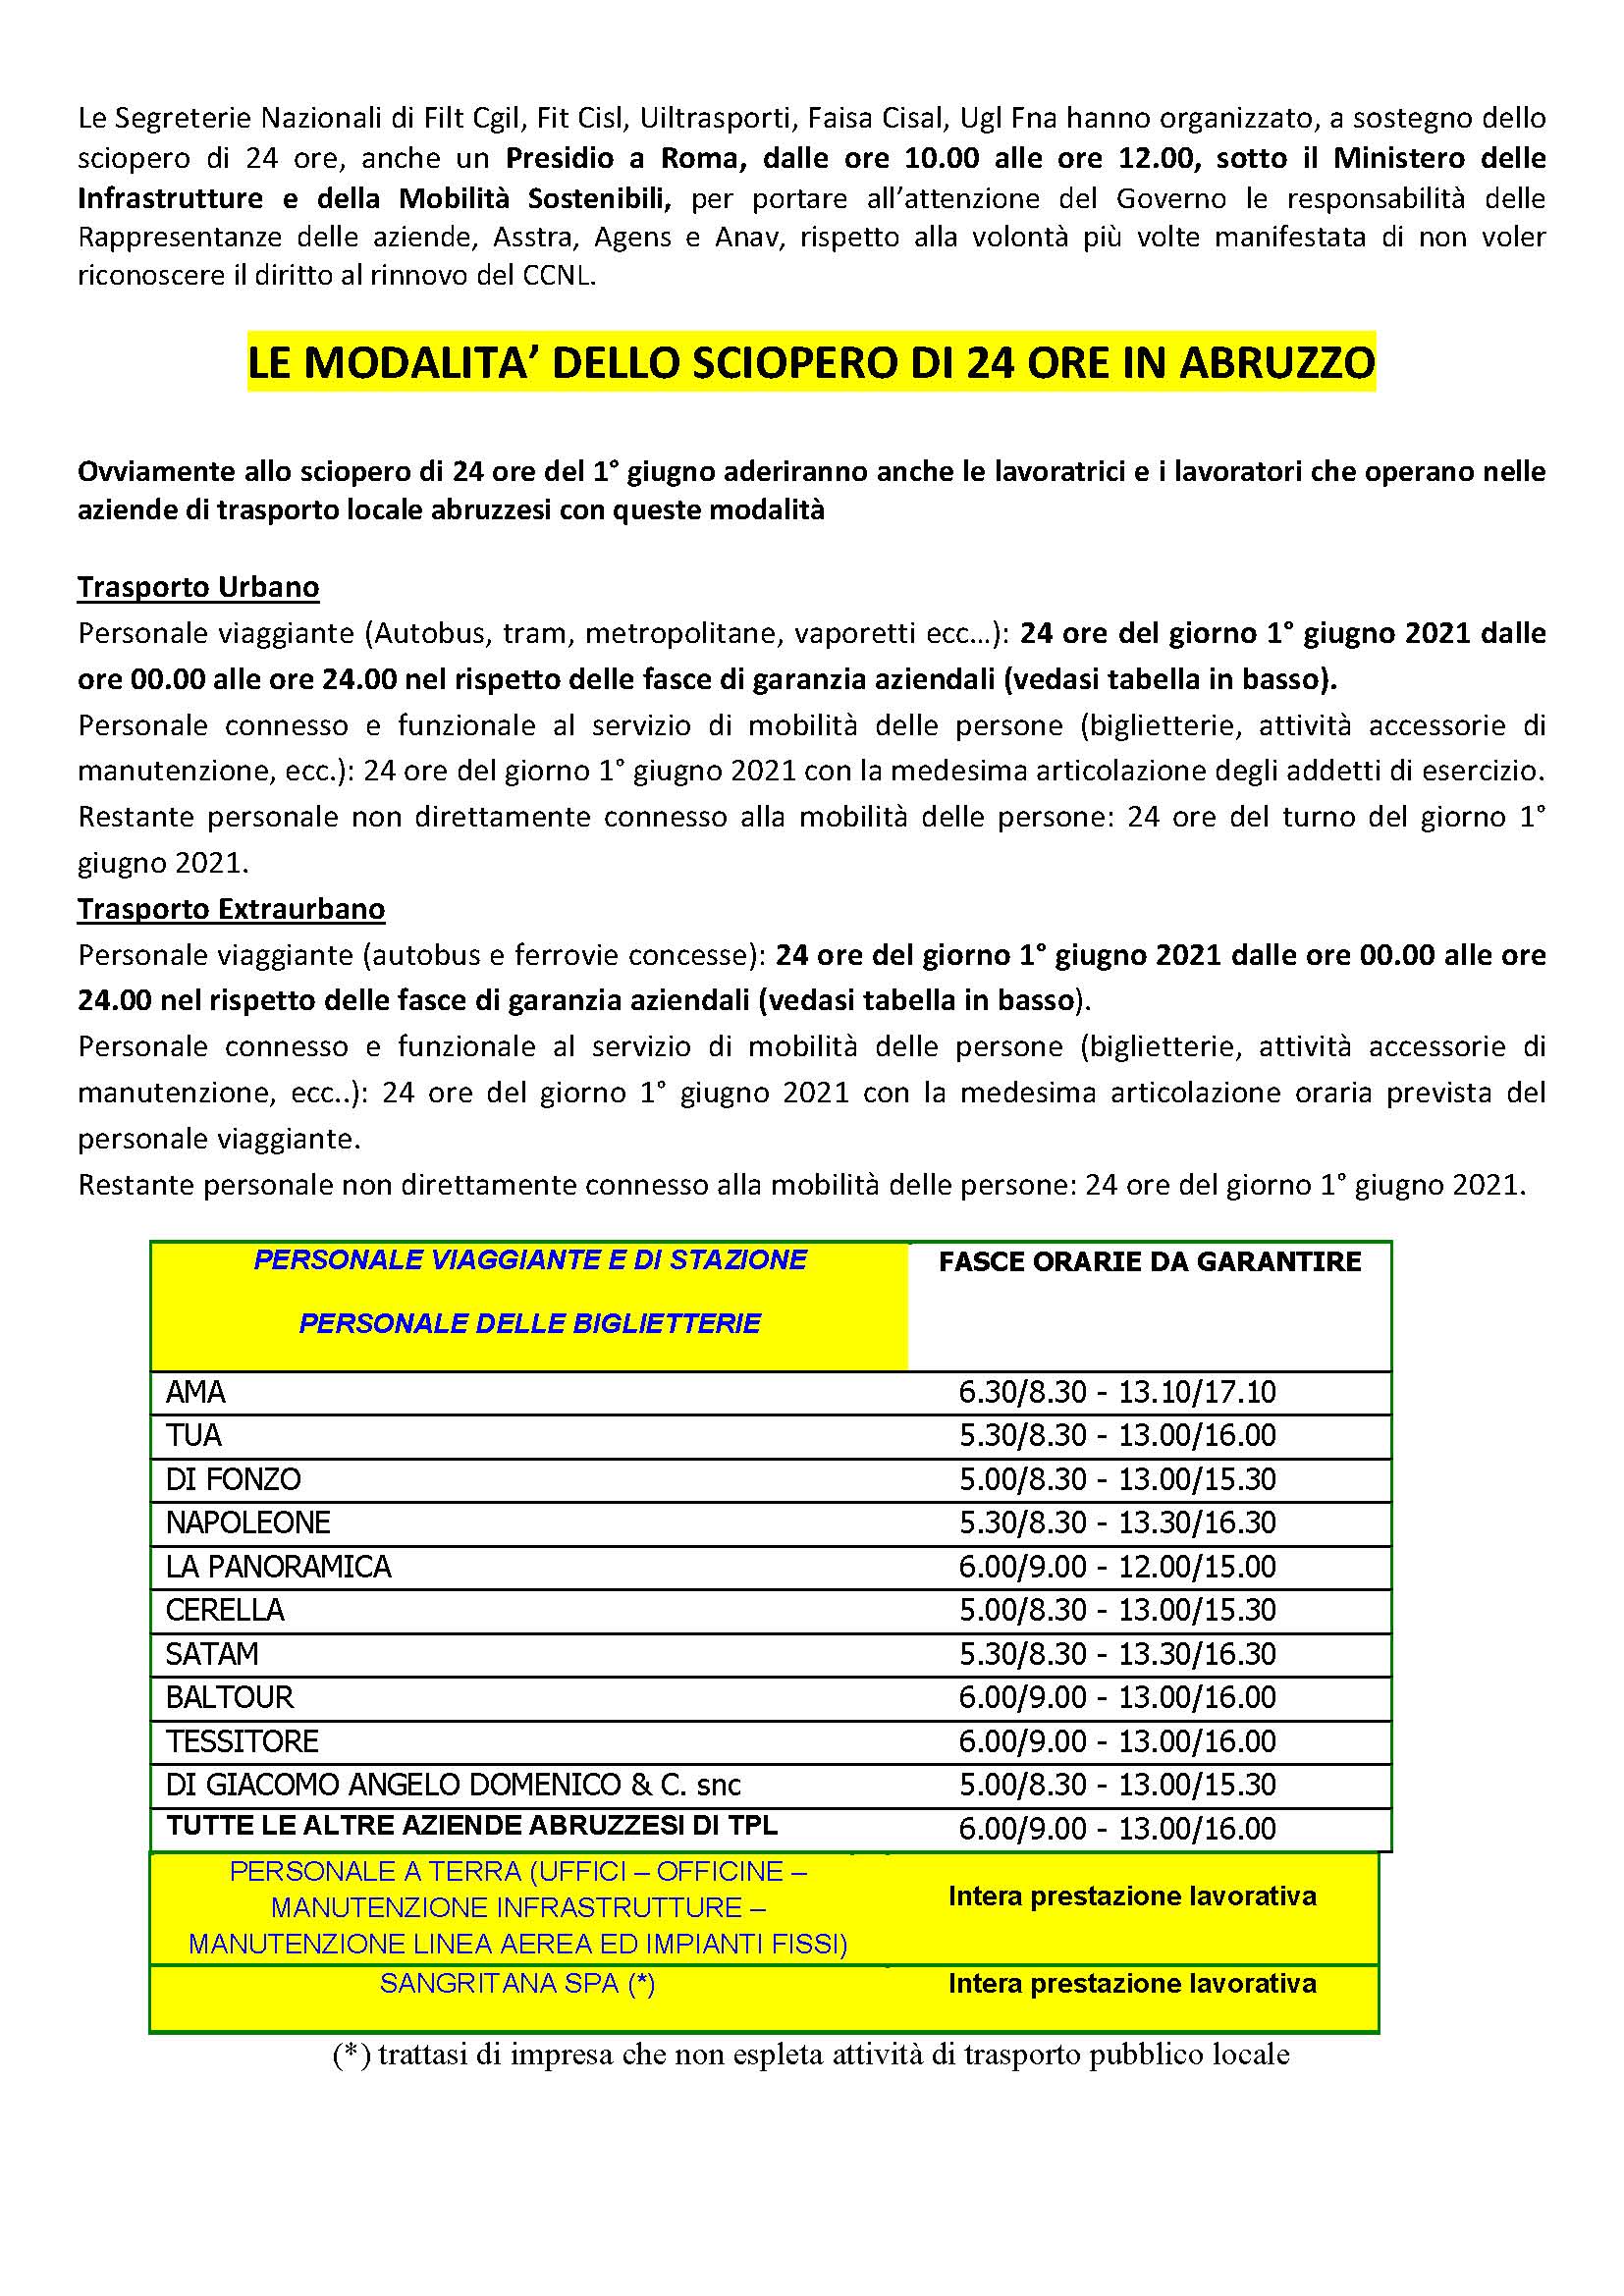 29 maggio 2021 Filt Cgil Fit Cisl Uiltrasporti Faisa Cisal Ugl autoferro Martedì 1 giugno terza azione di sciopero degli autoferrotranvieri per il rinnovo del CCNL. Le modalità in Abruzzo Page 2